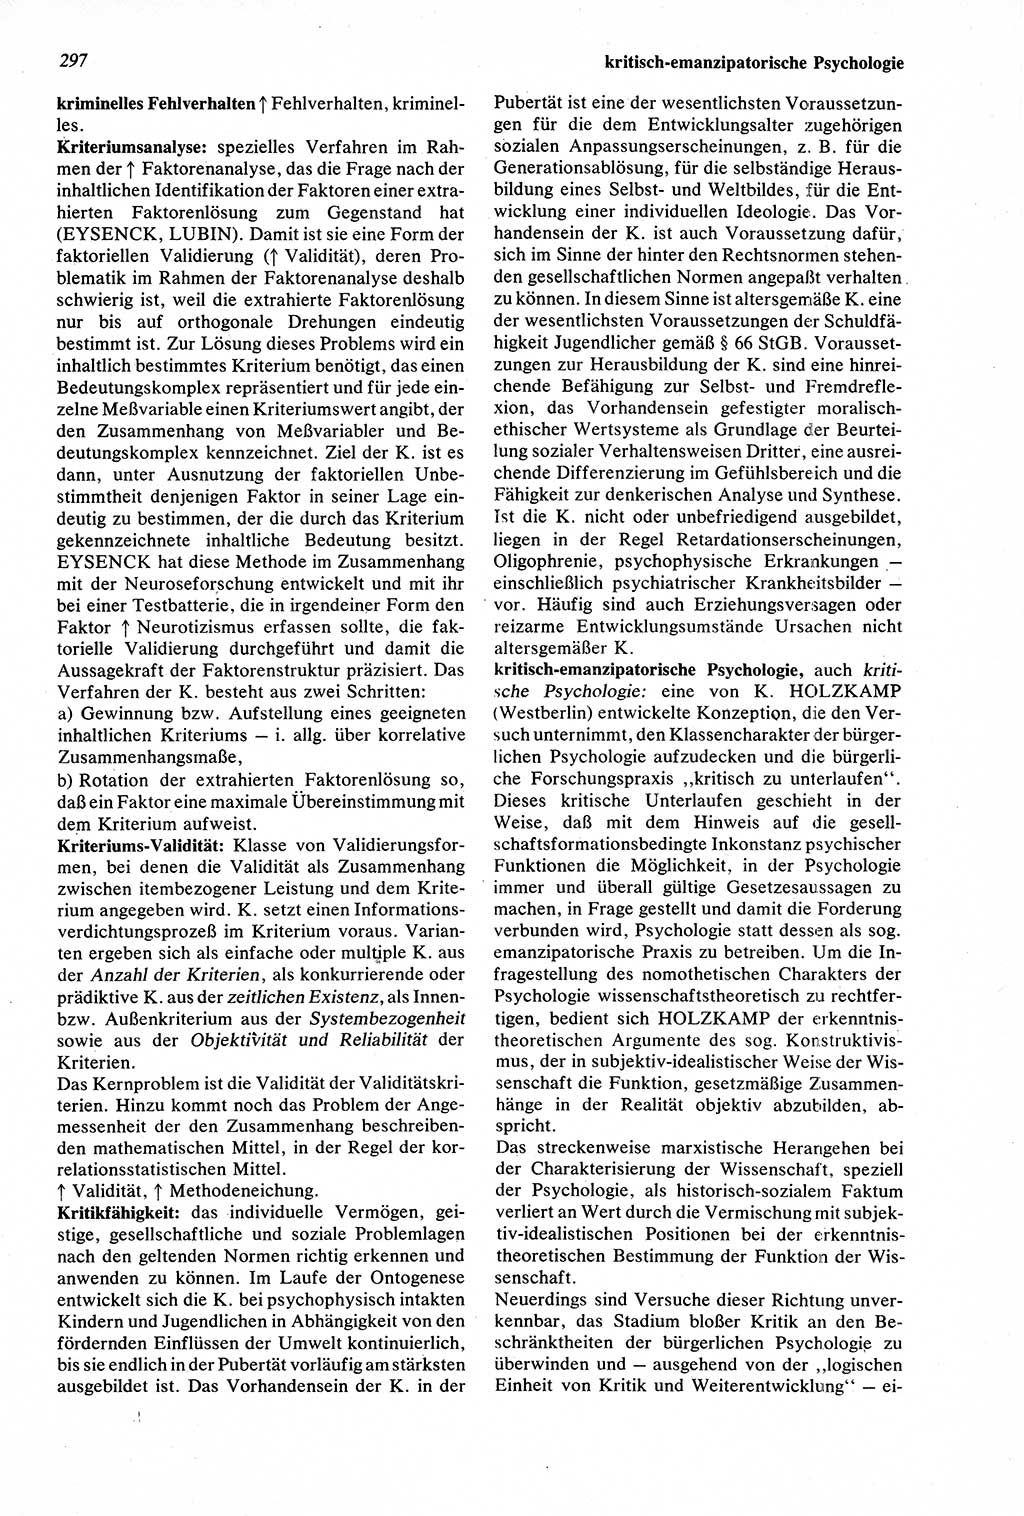 Wörterbuch der Psychologie [Deutsche Demokratische Republik (DDR)] 1976, Seite 297 (Wb. Psych. DDR 1976, S. 297)